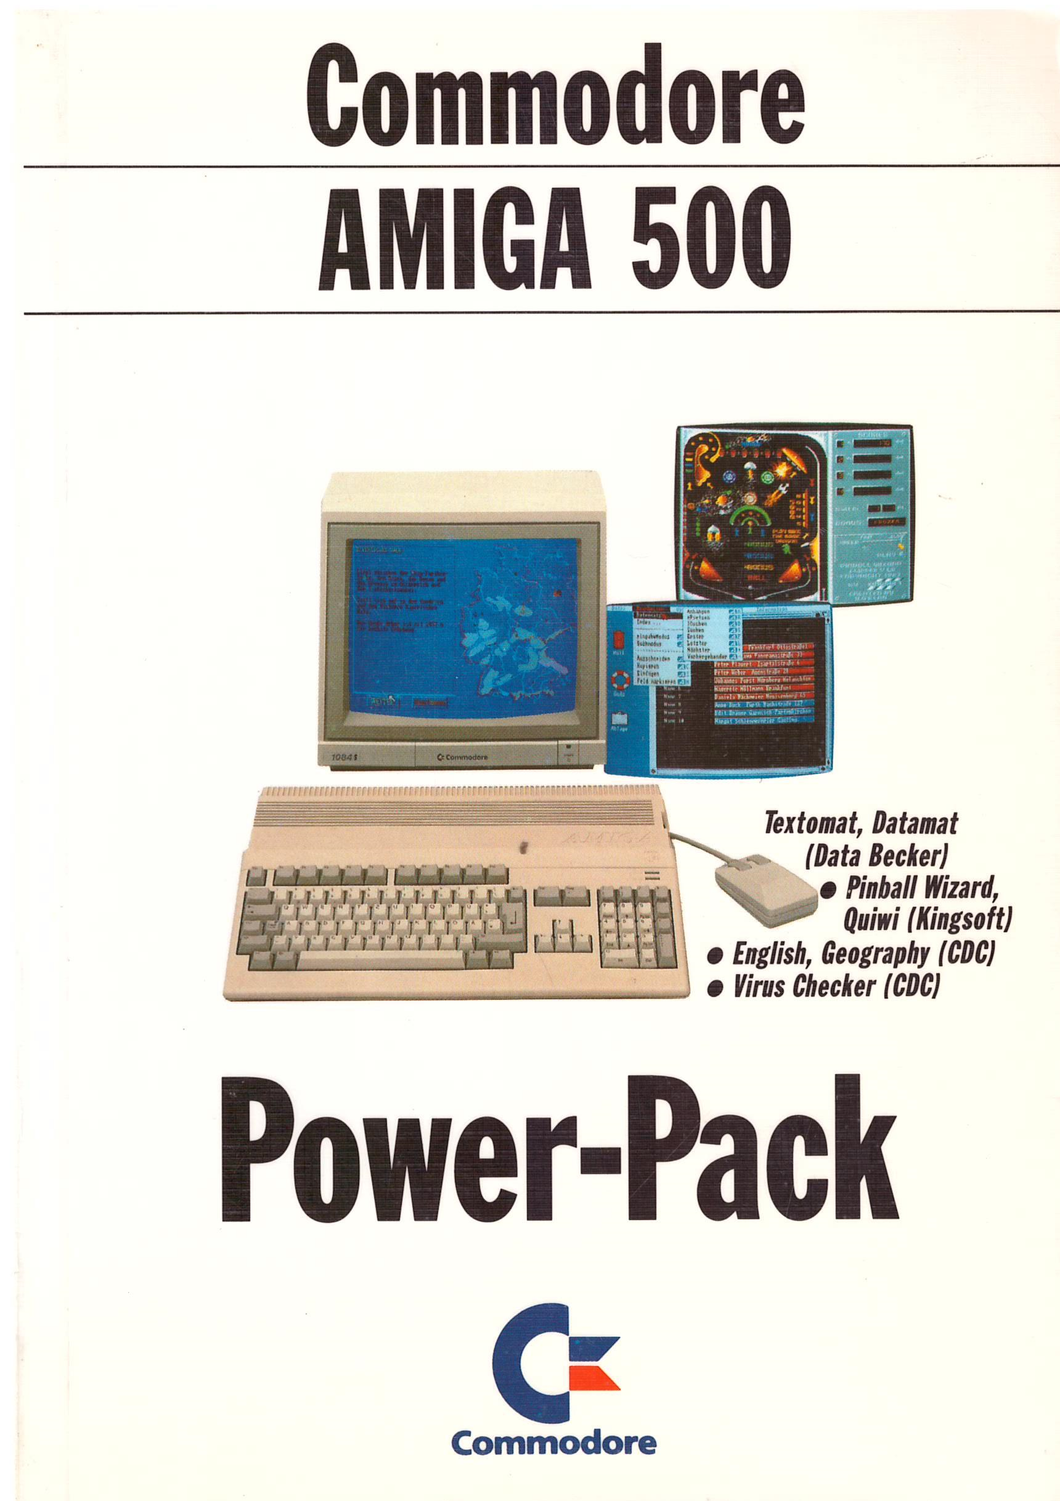 Handbuch zum Commodore Amiga 500 Power-Pack